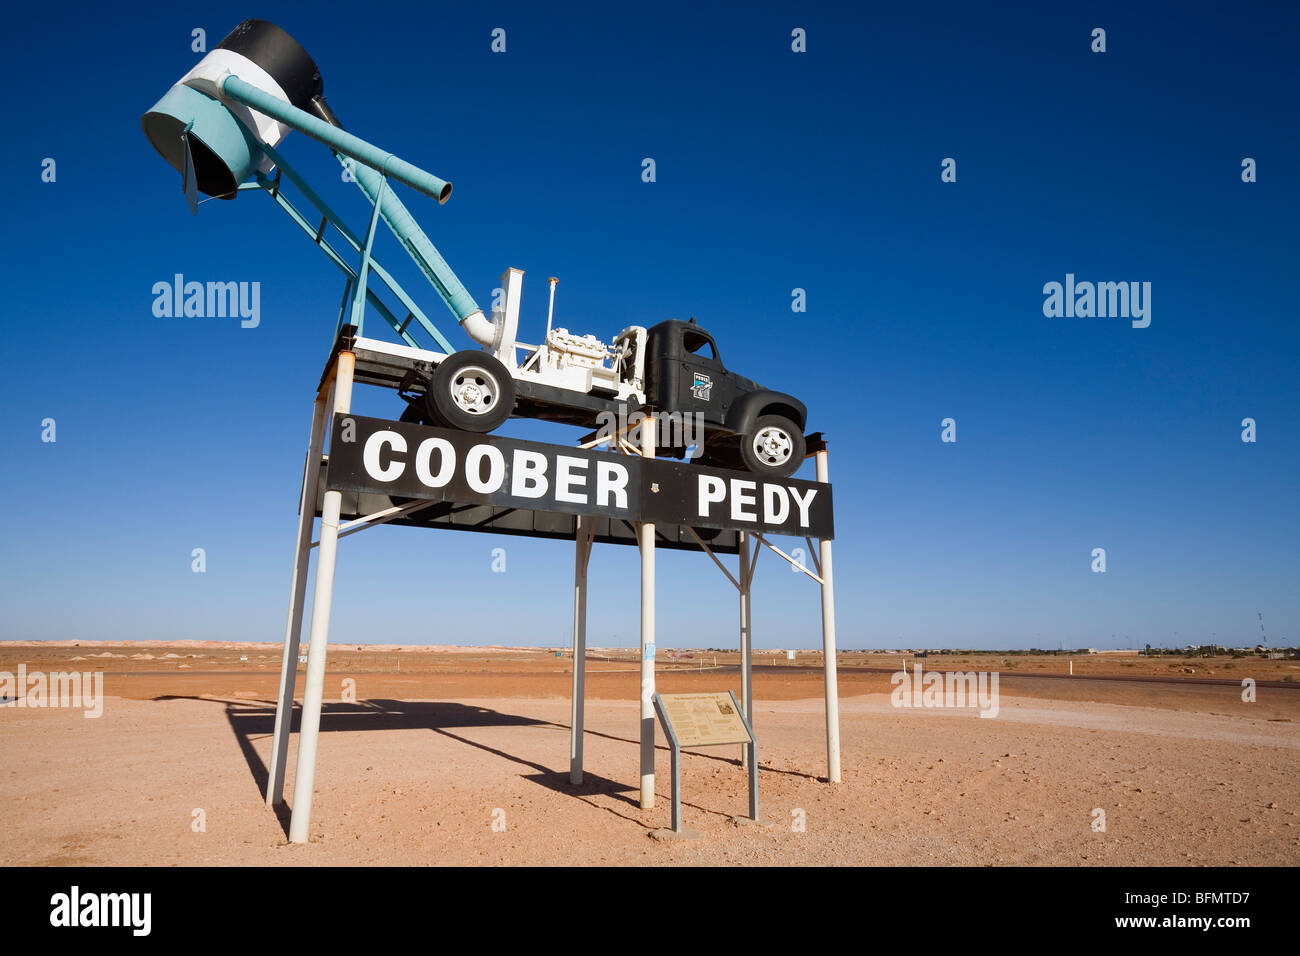 Australien, South Australia Coober Pedy. Ein Gebläse (LKW verwendet, um Schmutz von Opalminen extrahieren) empfängt die Besucher in die Stadt. Stockfoto